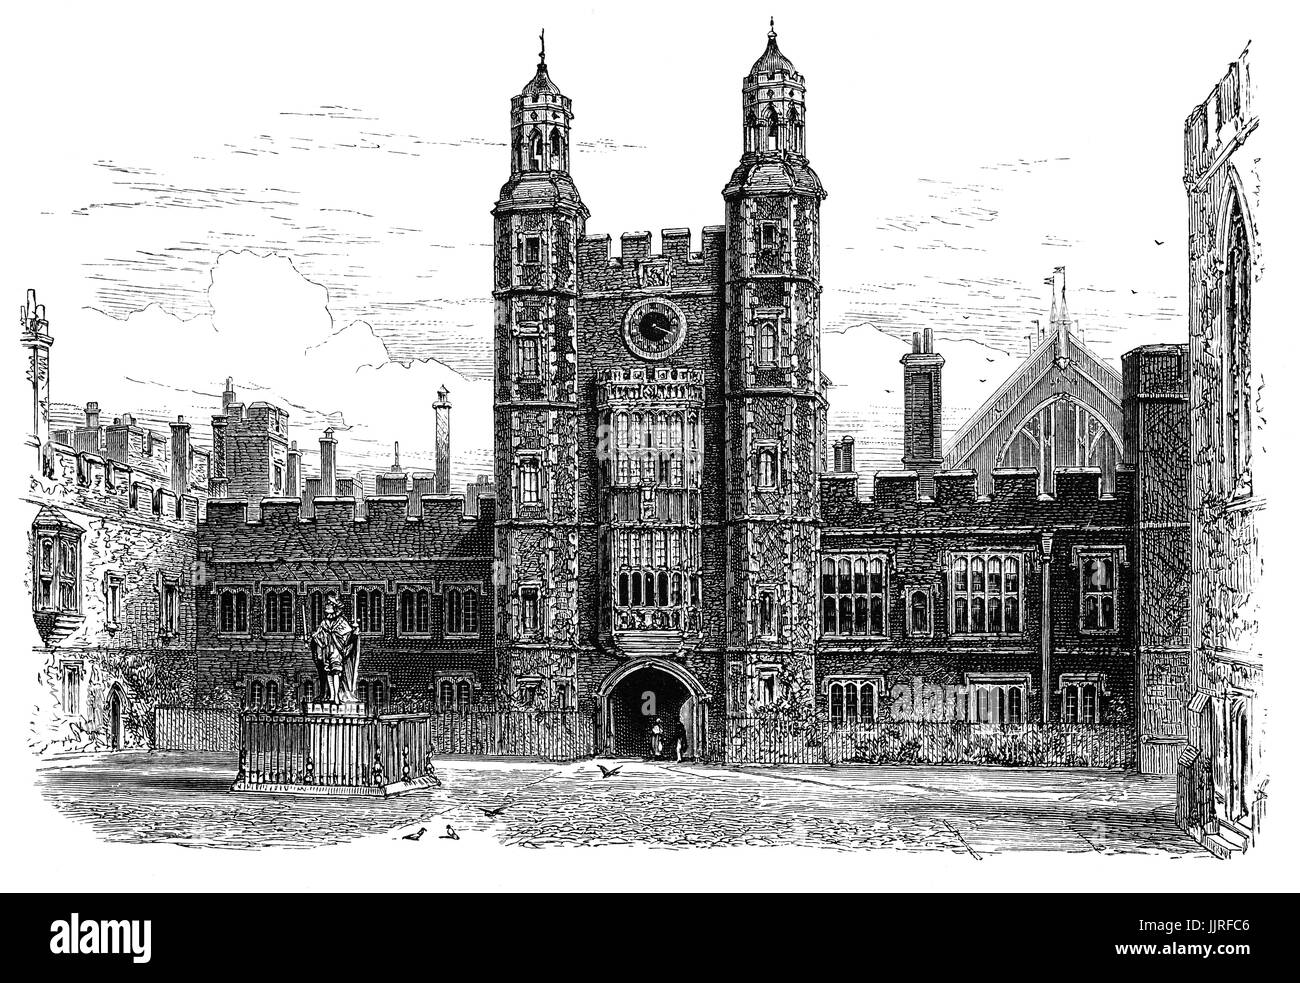 1870 : Le quadrilatère au Eton College, un internat pour garçons indépendante fondée en 1440 par le Roi Henry VI comme 'le King's College Notre Dame de l'Eton en plus Wyndsor', Eton, Berkshire, près de Windsor, en Angleterre. Banque D'Images